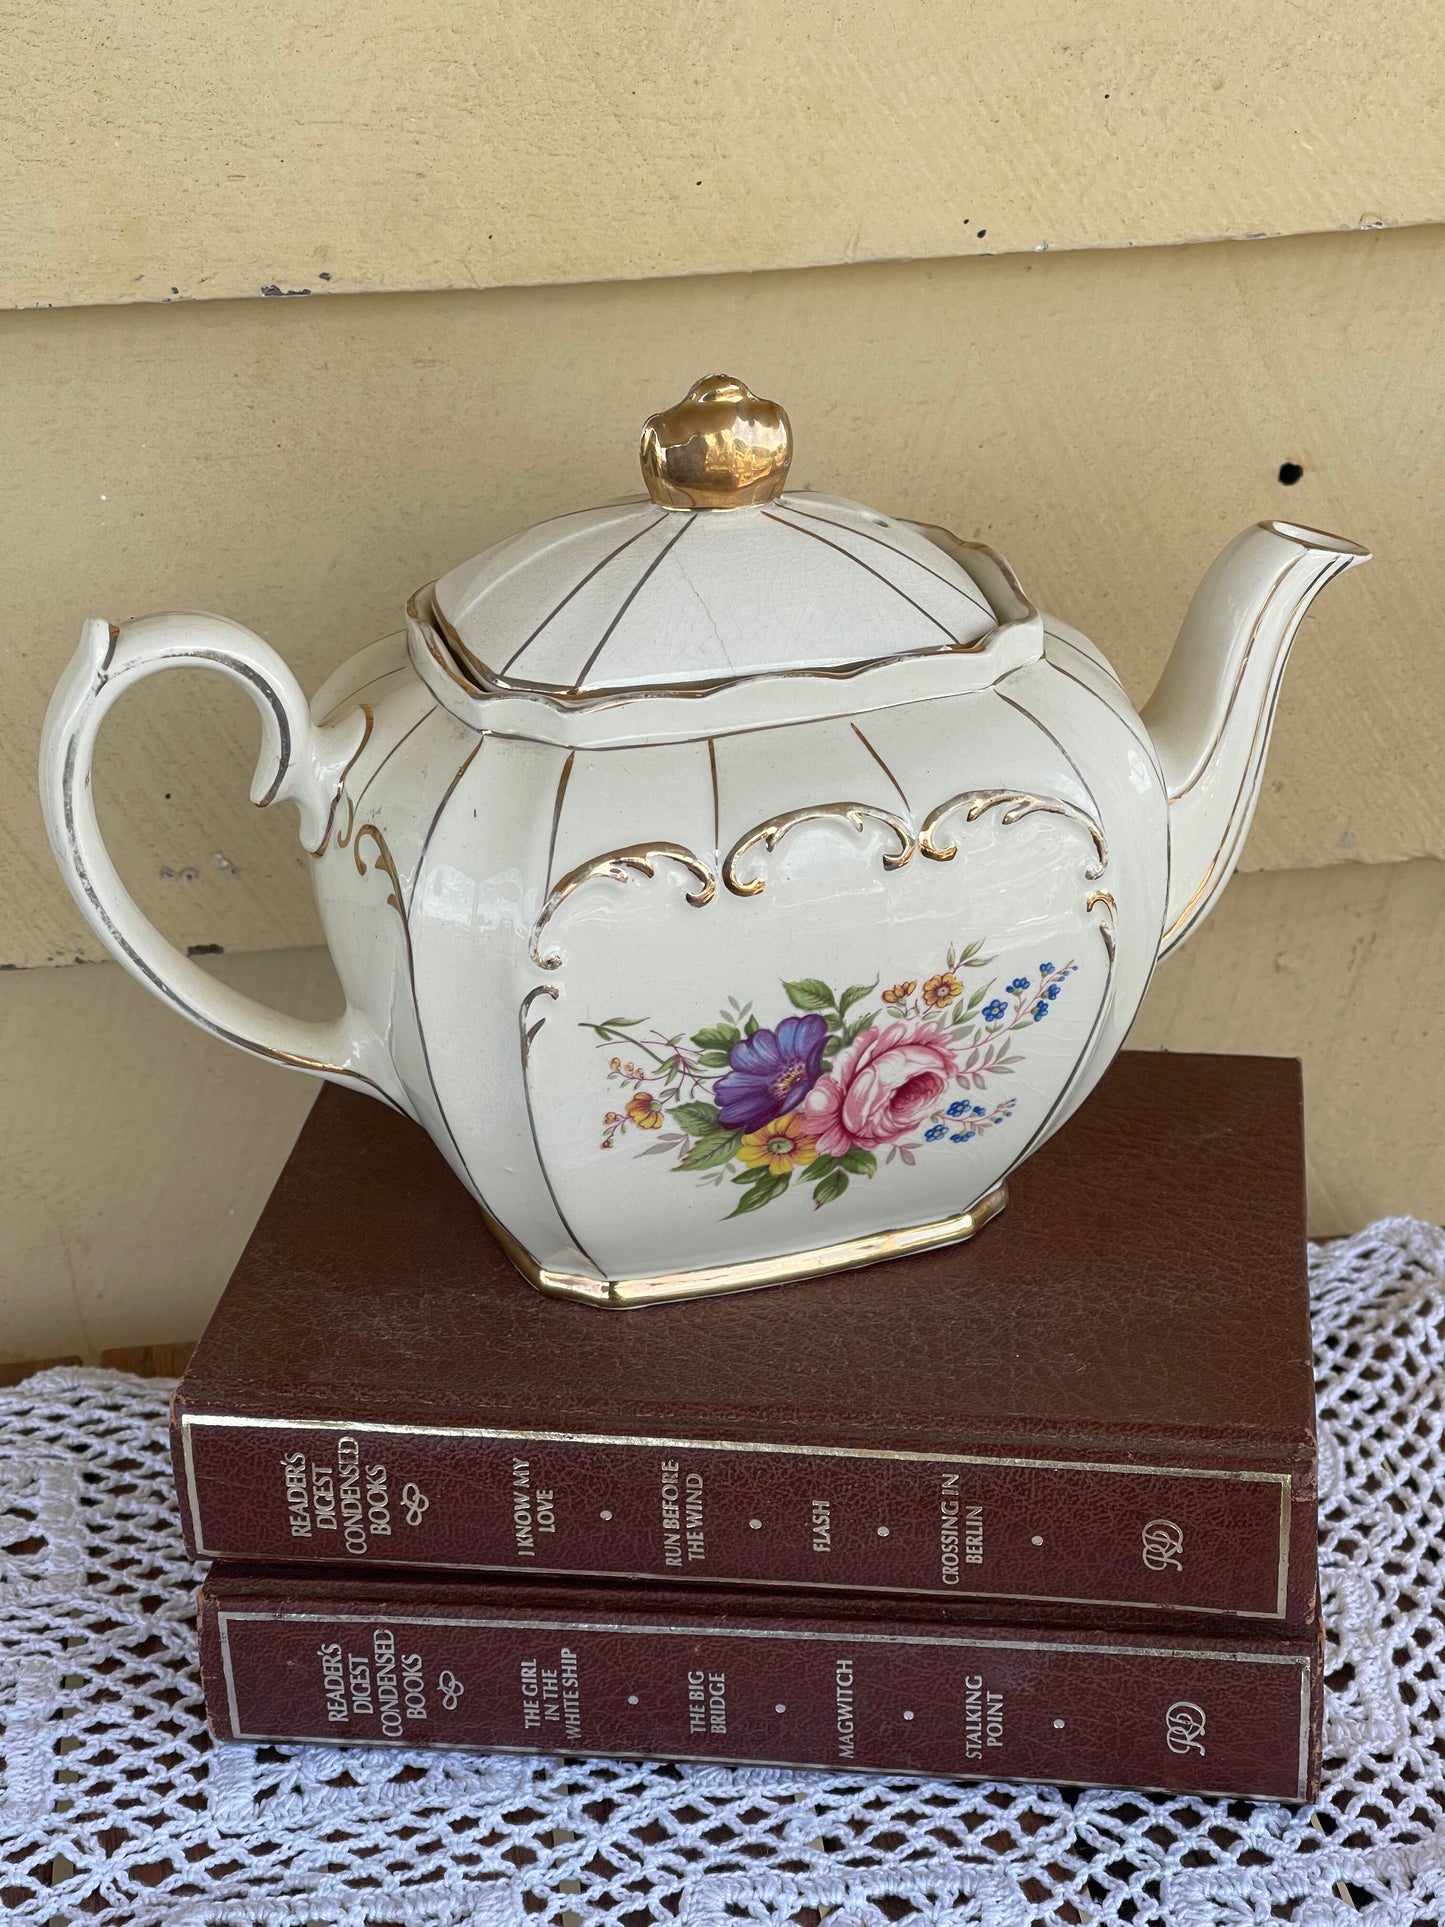 Vintage 1950s Sadler Tea Pot with Roses